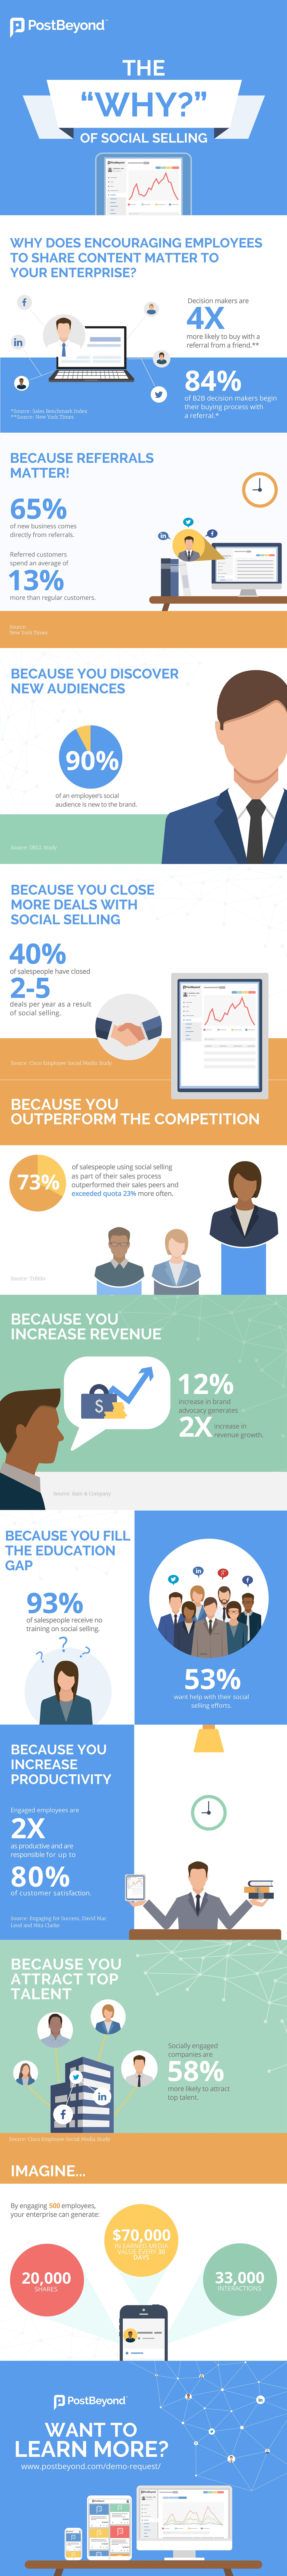 infographic - hvorfor Social Selling er afgørende for salgsindsatsen